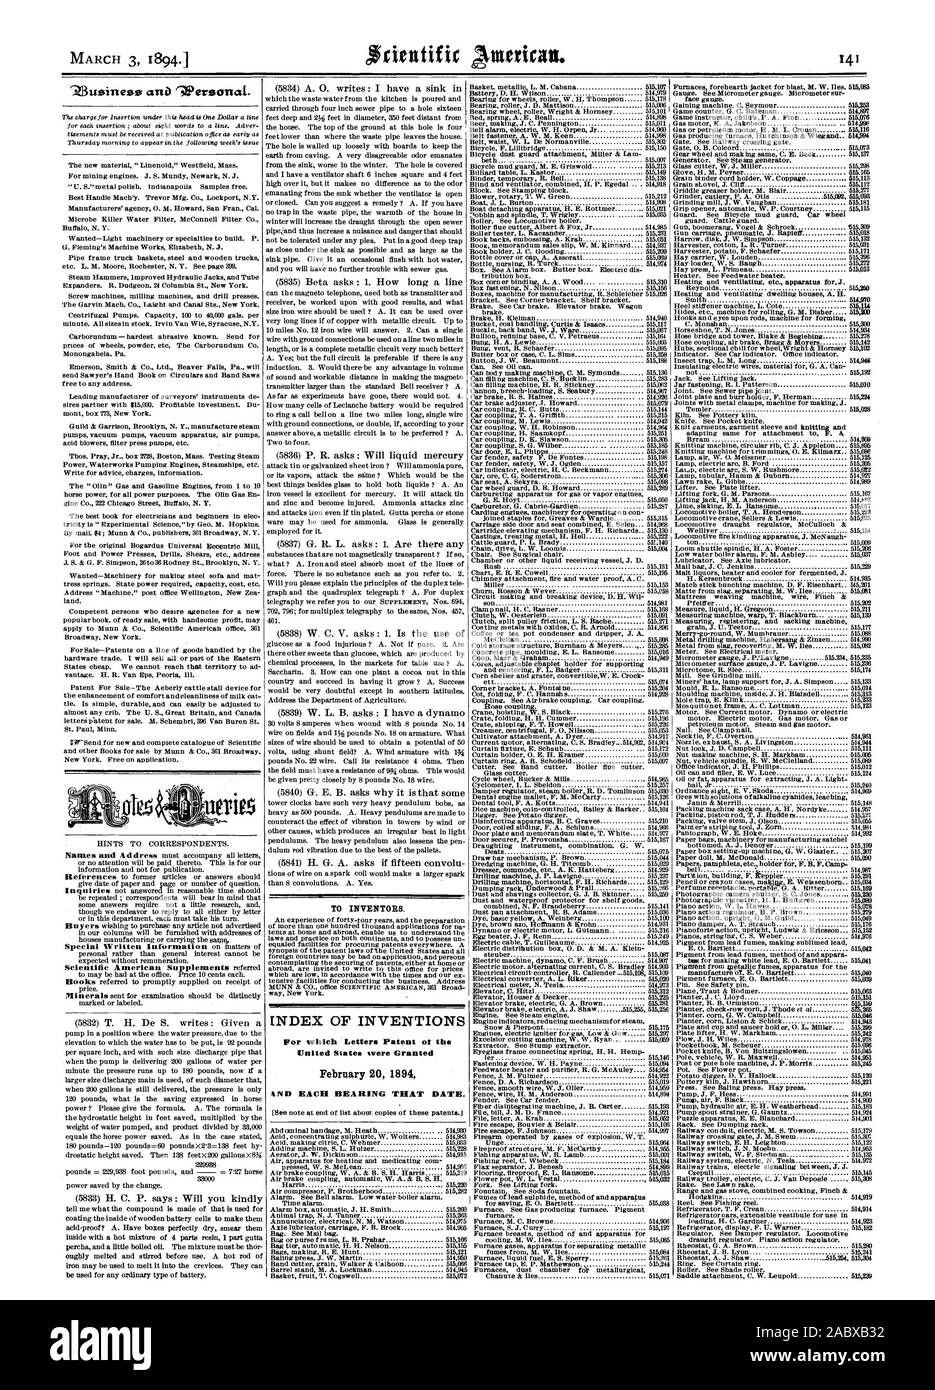 Per gli inventori. Indice delle invenzioni per le quali lettere di brevetto oi negli Stati Uniti sono stati concessi 20 febbraio 1894, Scientific American, 1894-03-03 Foto Stock